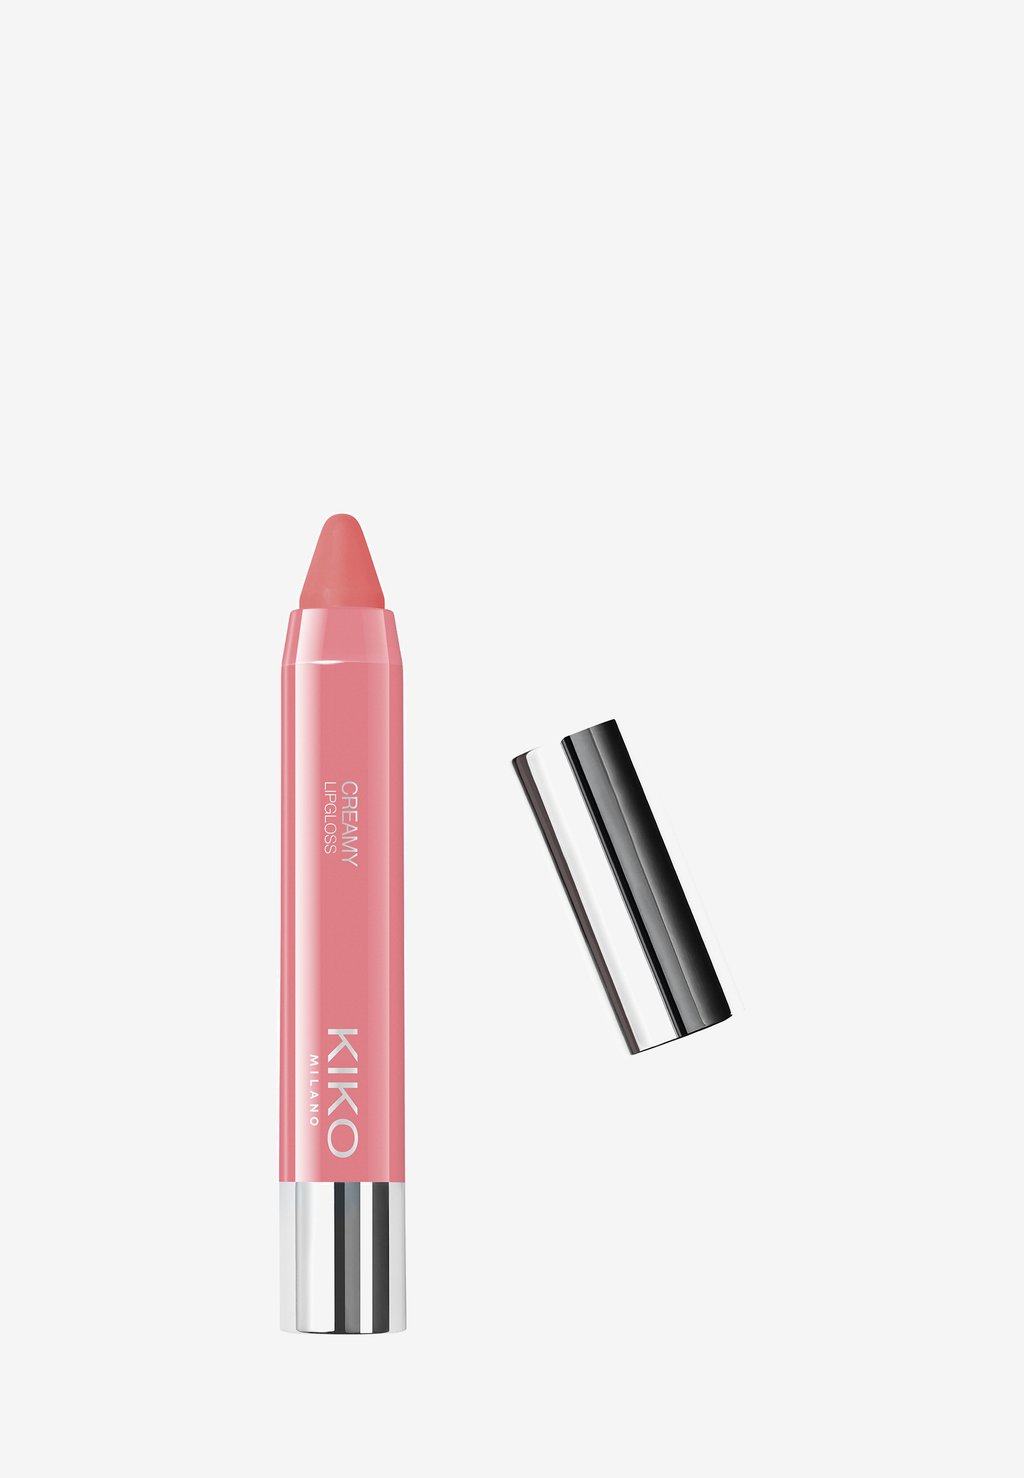 Блеск для губ Creamy Lipgloss KIKO Milano, цвет 102 pearly strawberry pink блеск с эффектом влажных губ kiko milano creamy lipgloss 2 84